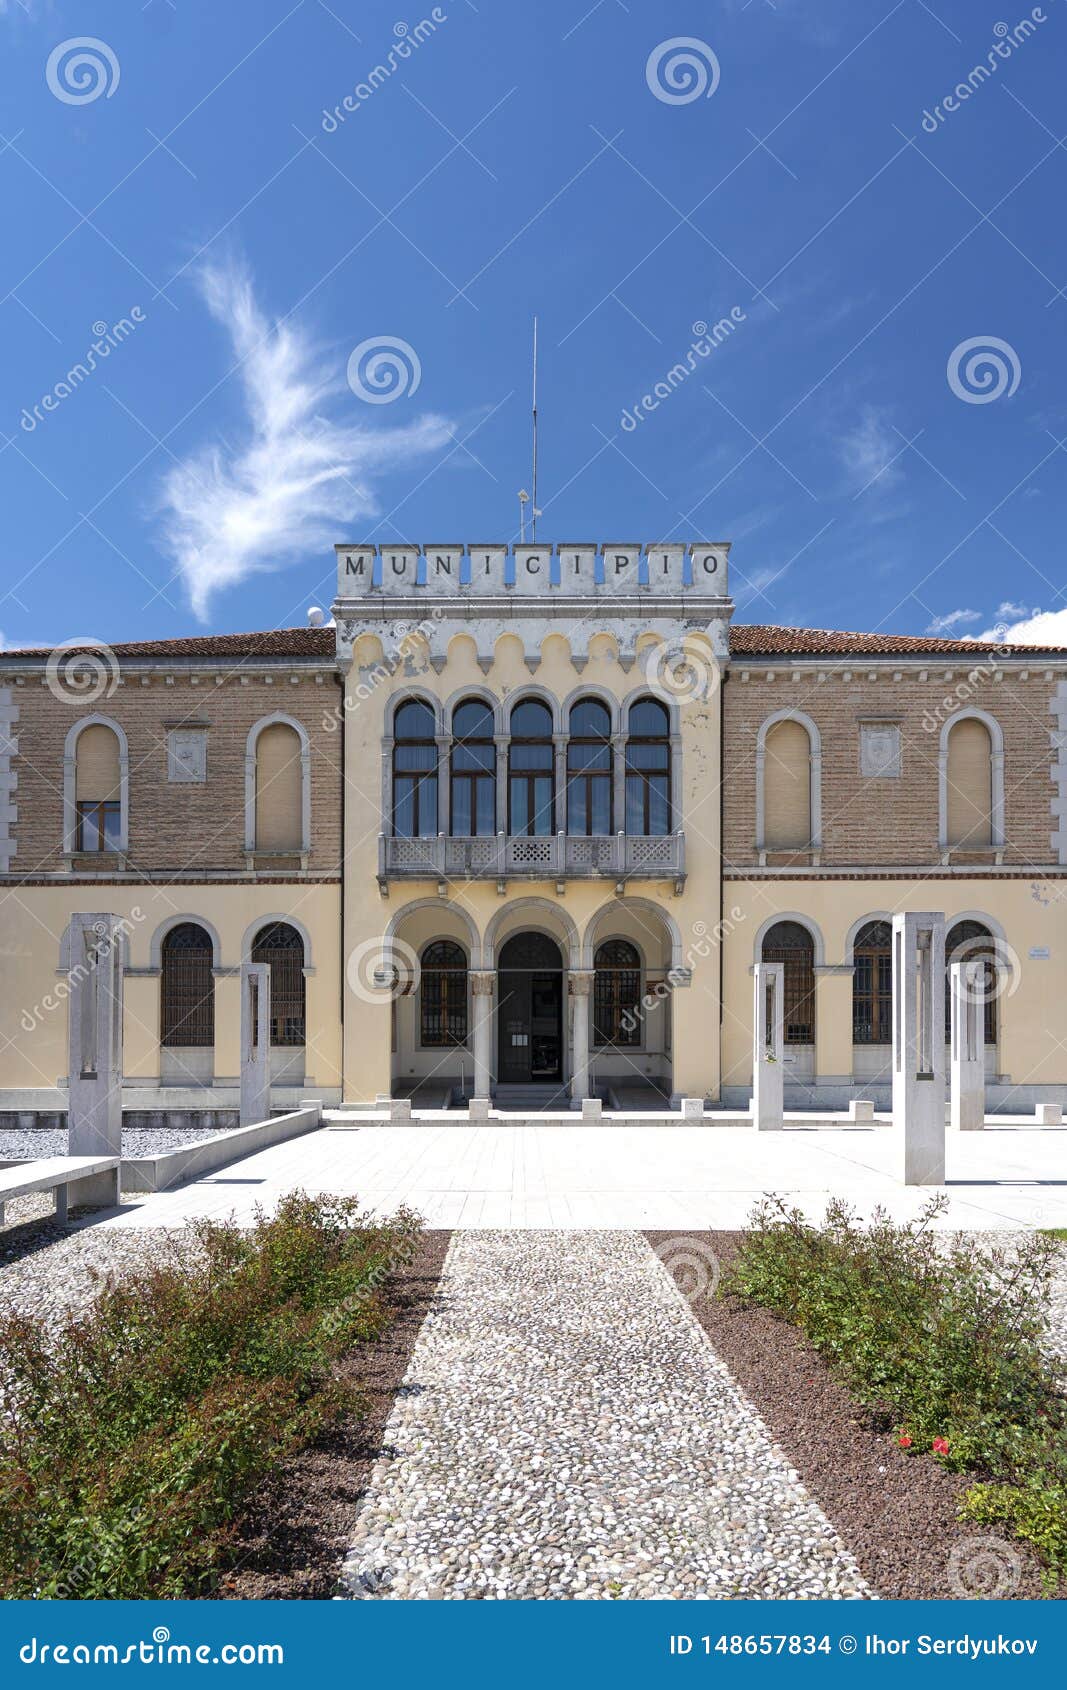 ceggia, san dona di piave, venice - municipality of ceggia. italian city hall. city hall in ceggia near venice in italy - immagine